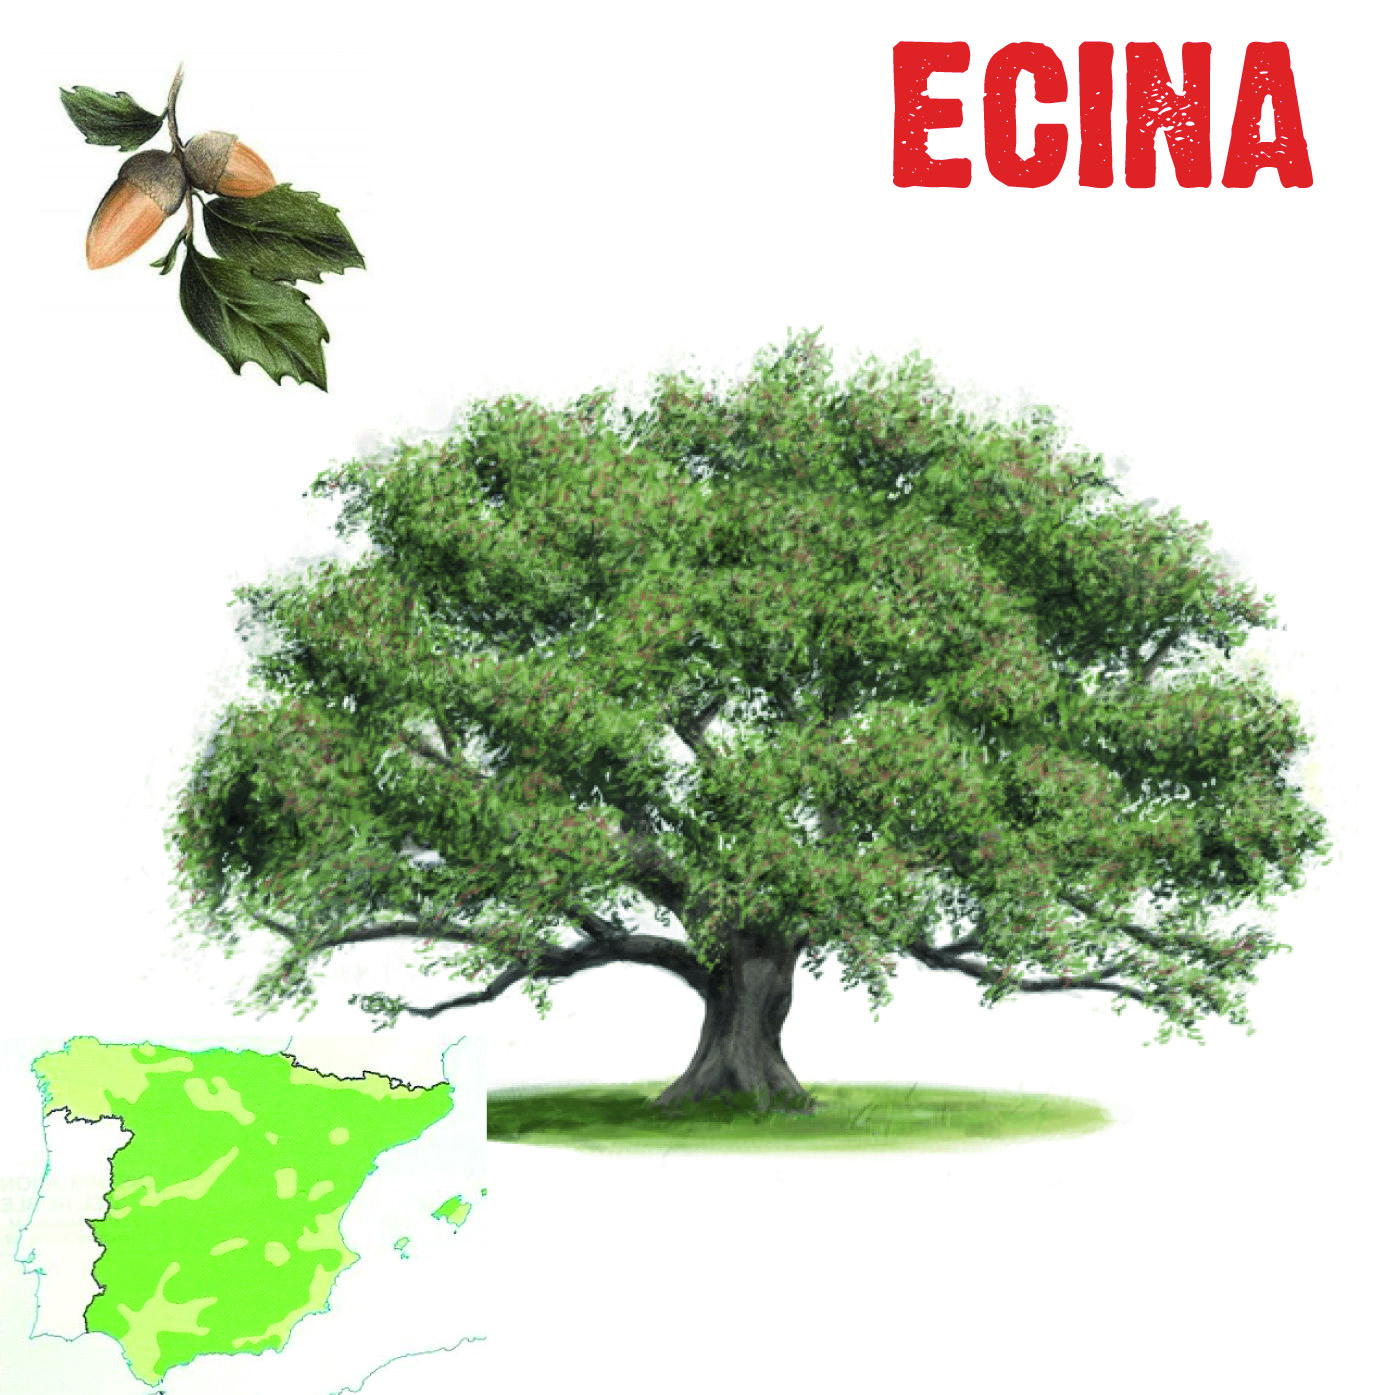 La encina (Quercus ilex) es una especie característica de los bosques perennifolios mediterráneos. Es un todoterreno en España, el árbol más extendido.